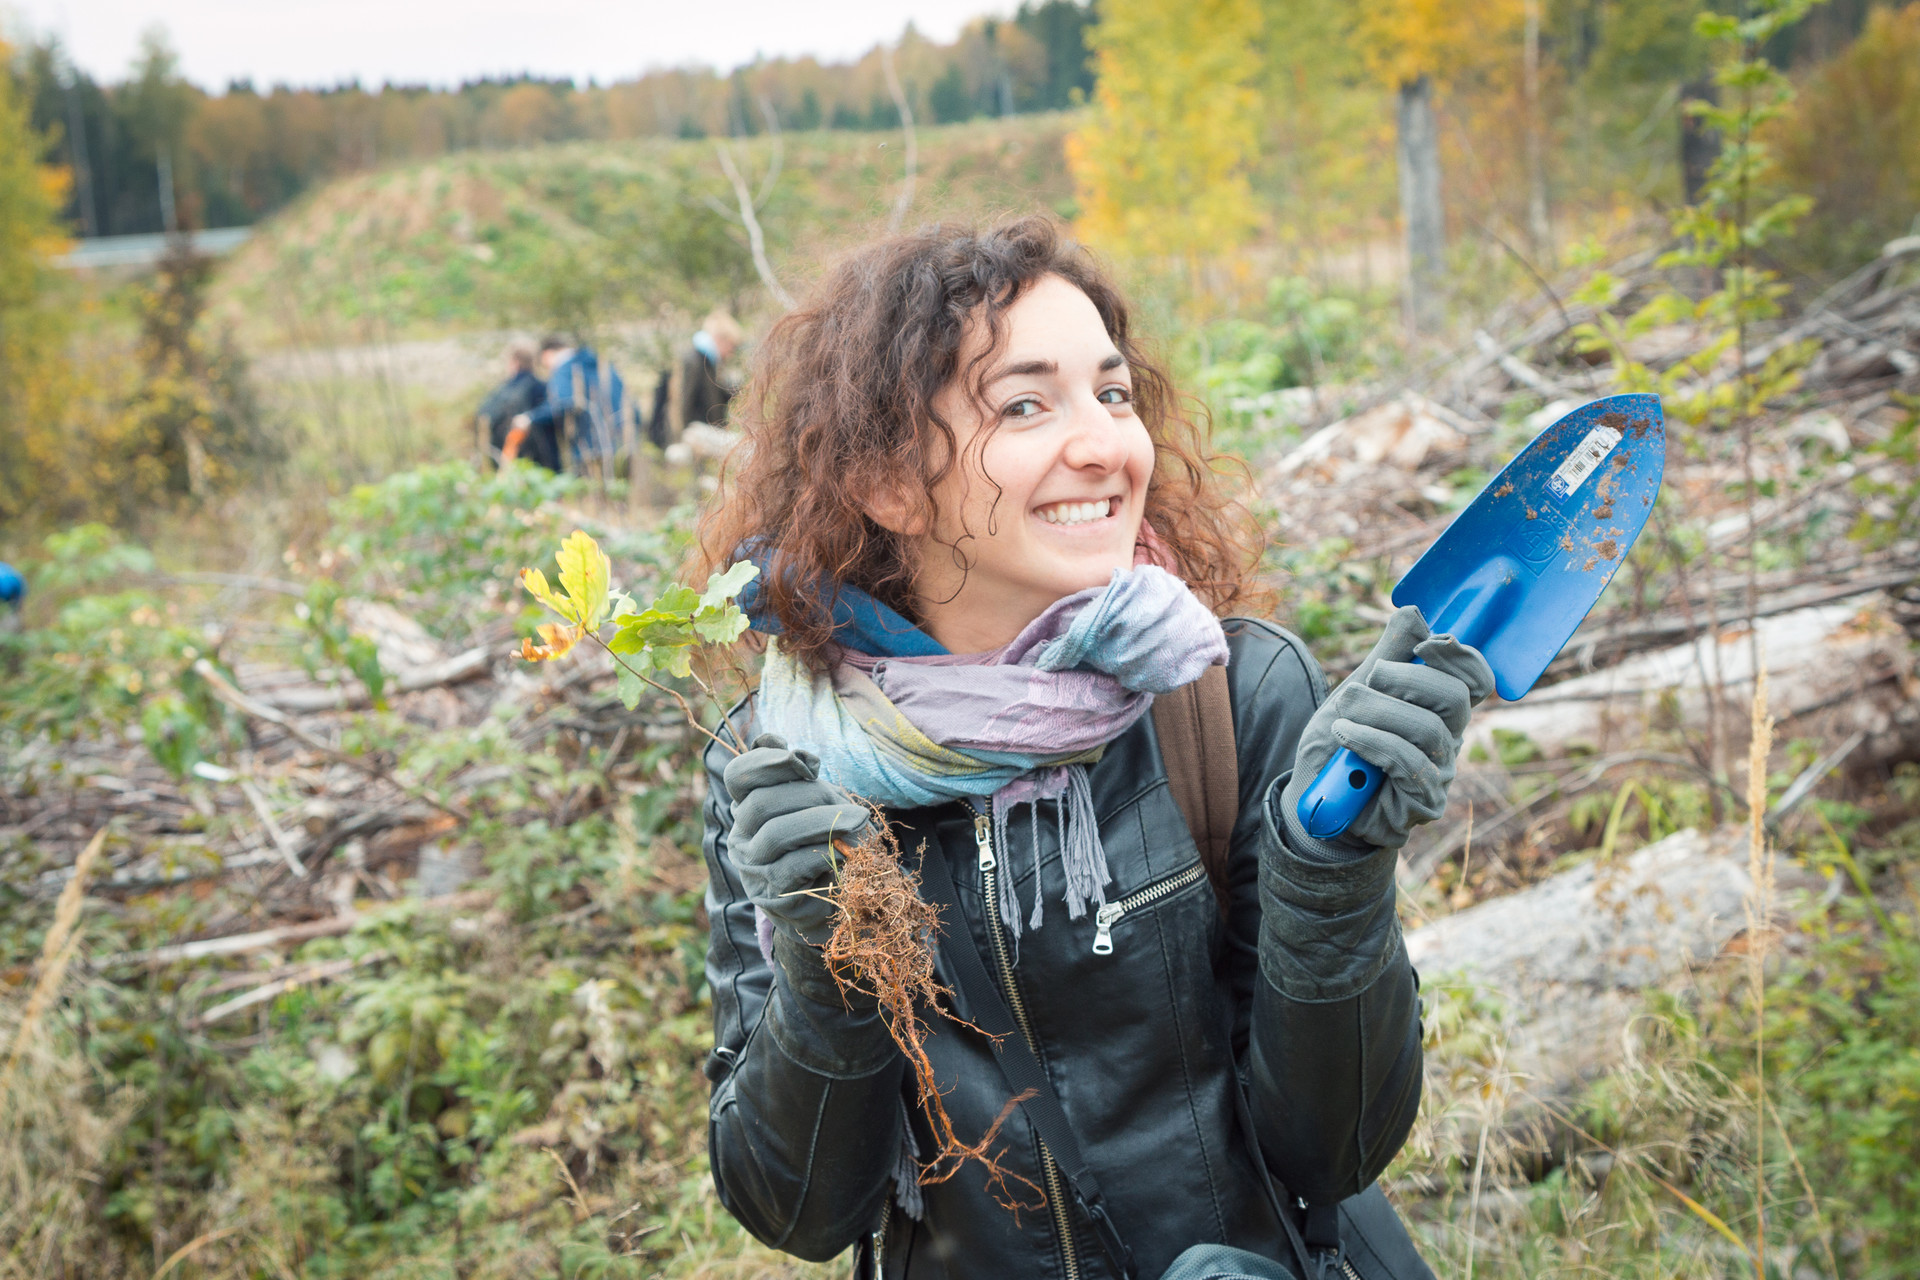 Piantando un bosco nella oblast' di Mosca con Greenpeace